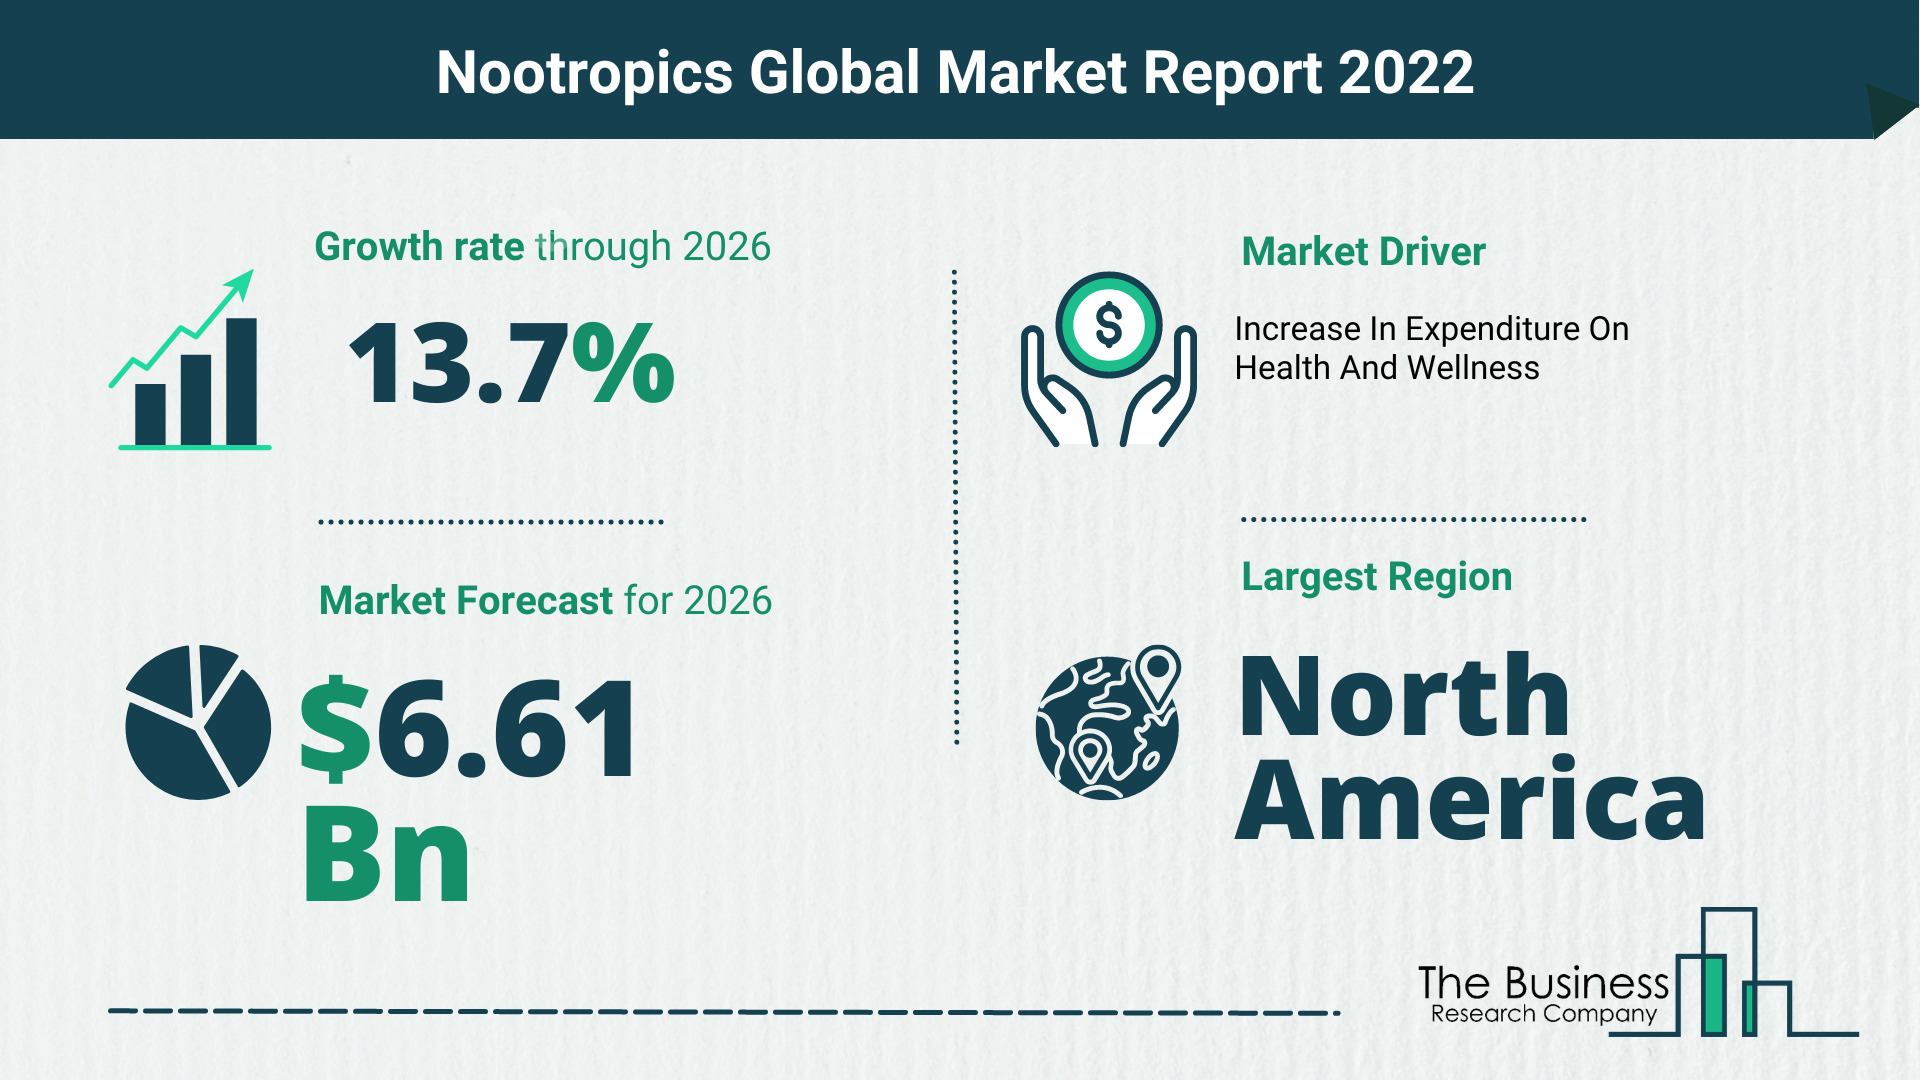 How Will The Nootropics Market Grow In 2022?